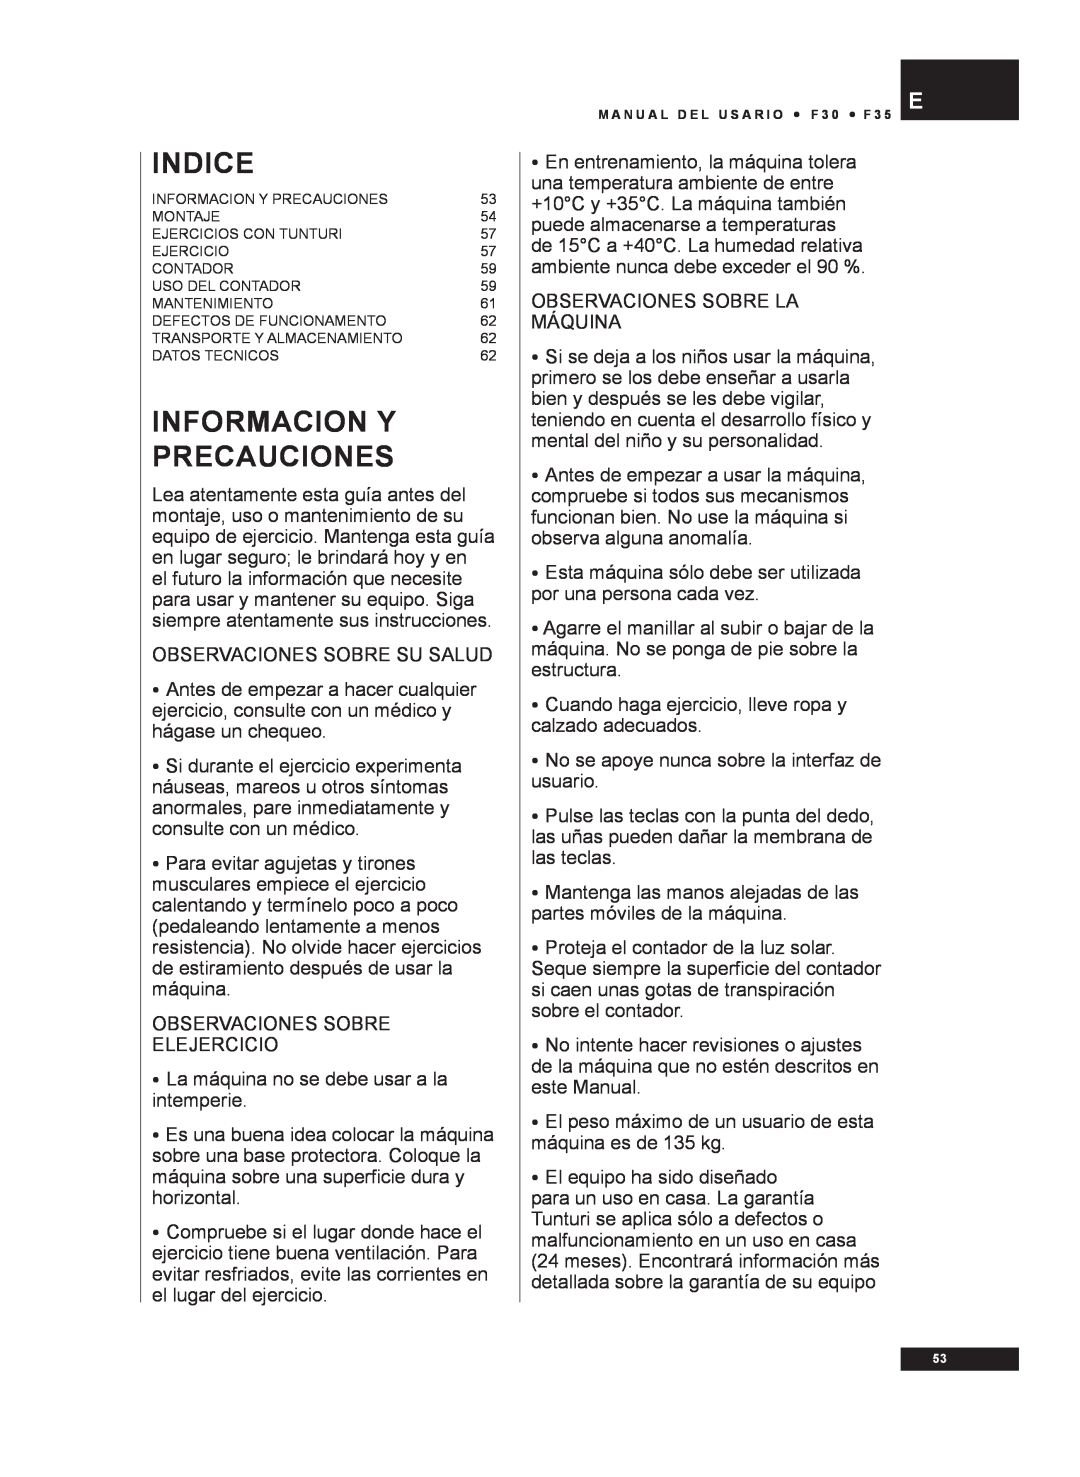 Tunturi F30, F35 owner manual Informacion Y Precauciones, Indice 